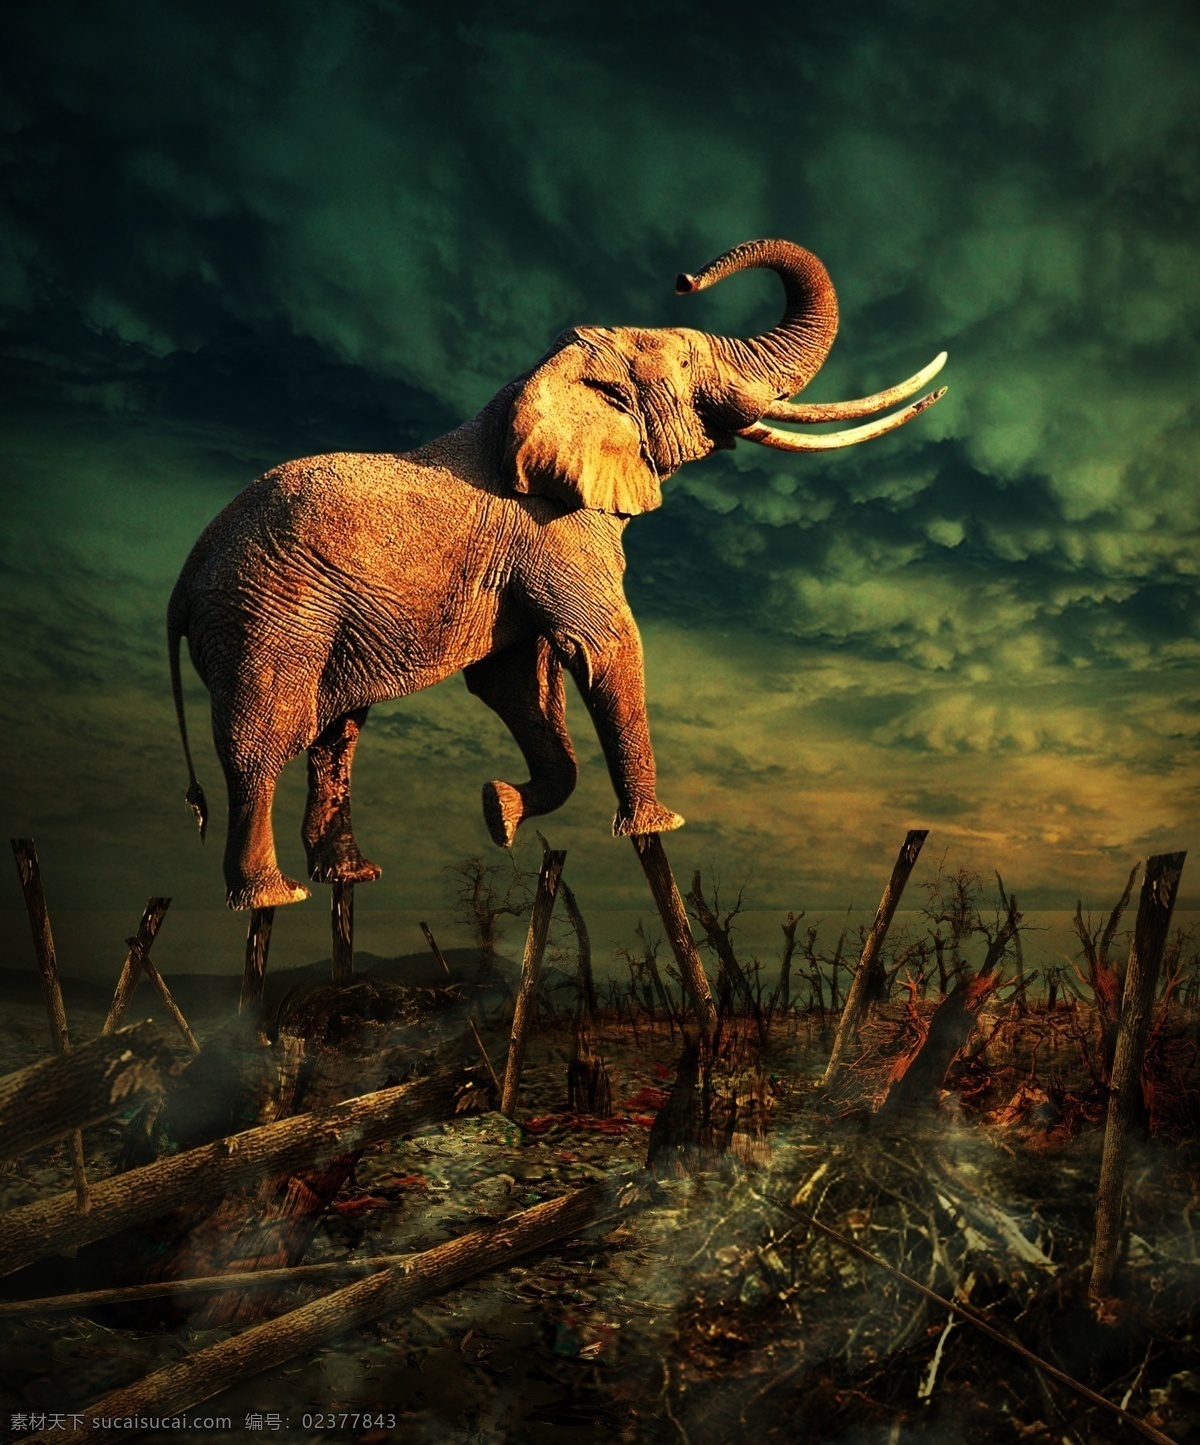 踩树的大象 梦幻 创意 创新 背景 组图 城堡 电影 海报 封面 大象 广告设计模板 源文件